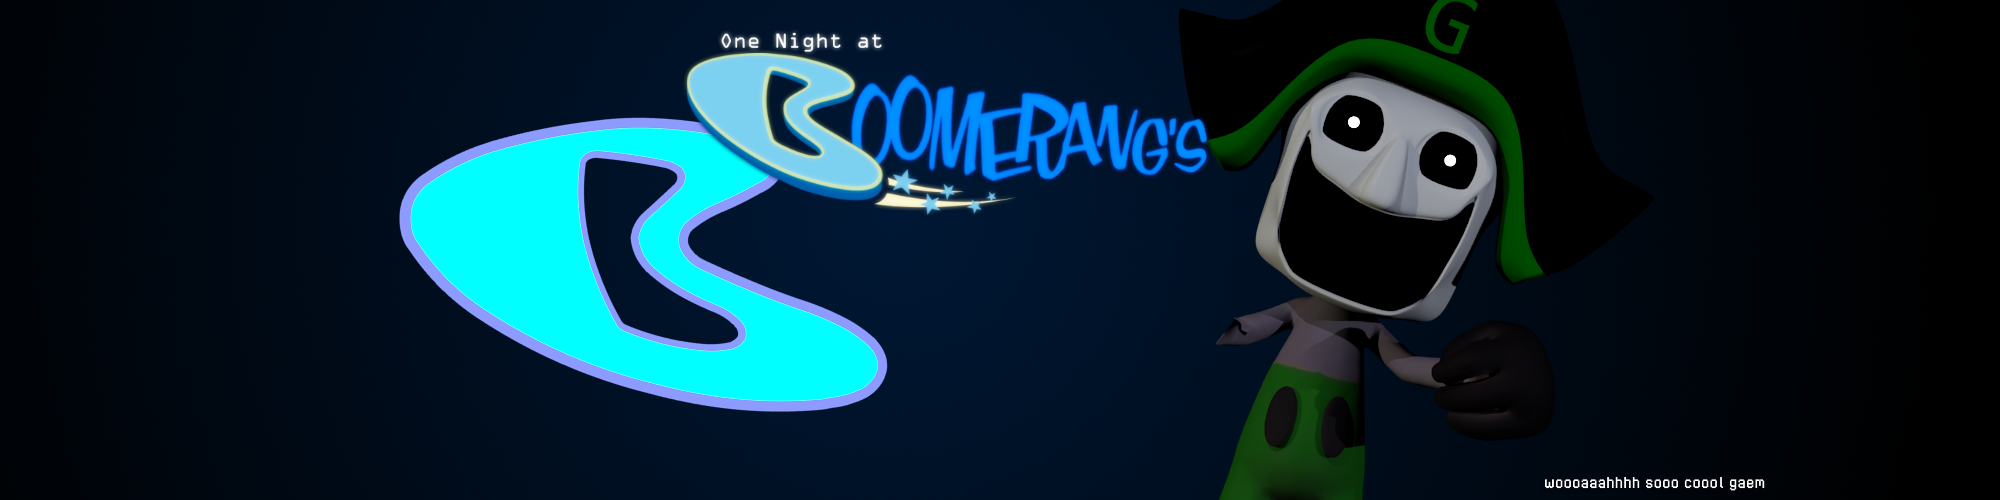 One Night at Boomerang's (2021)